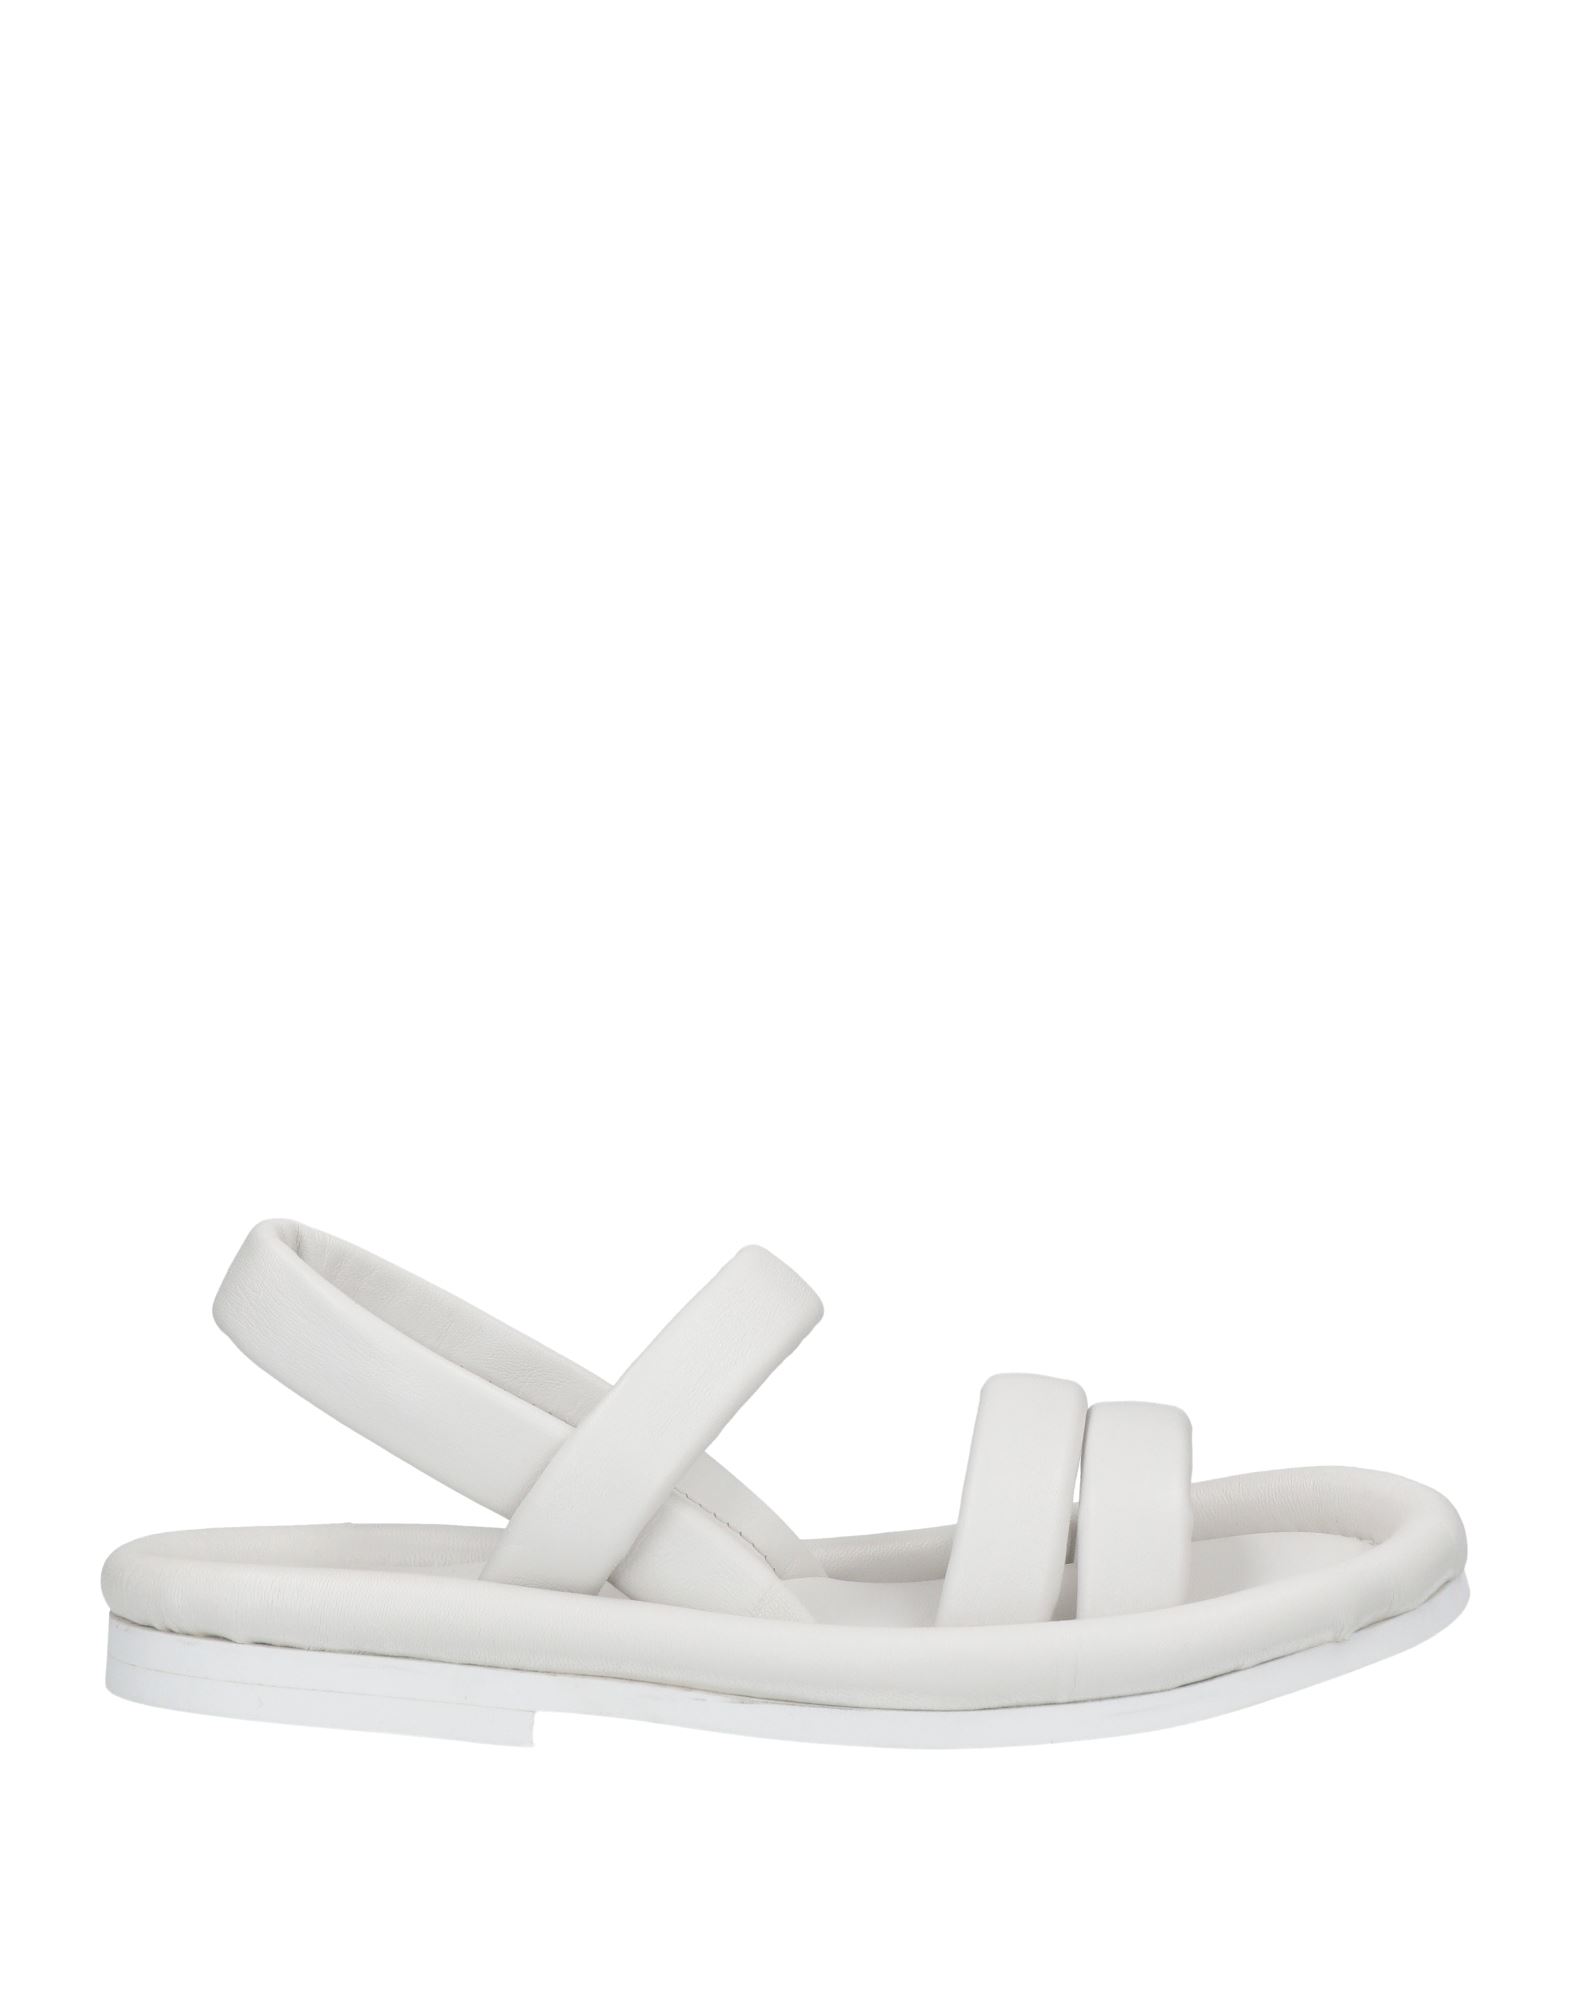 Del Carlo Sandals In White